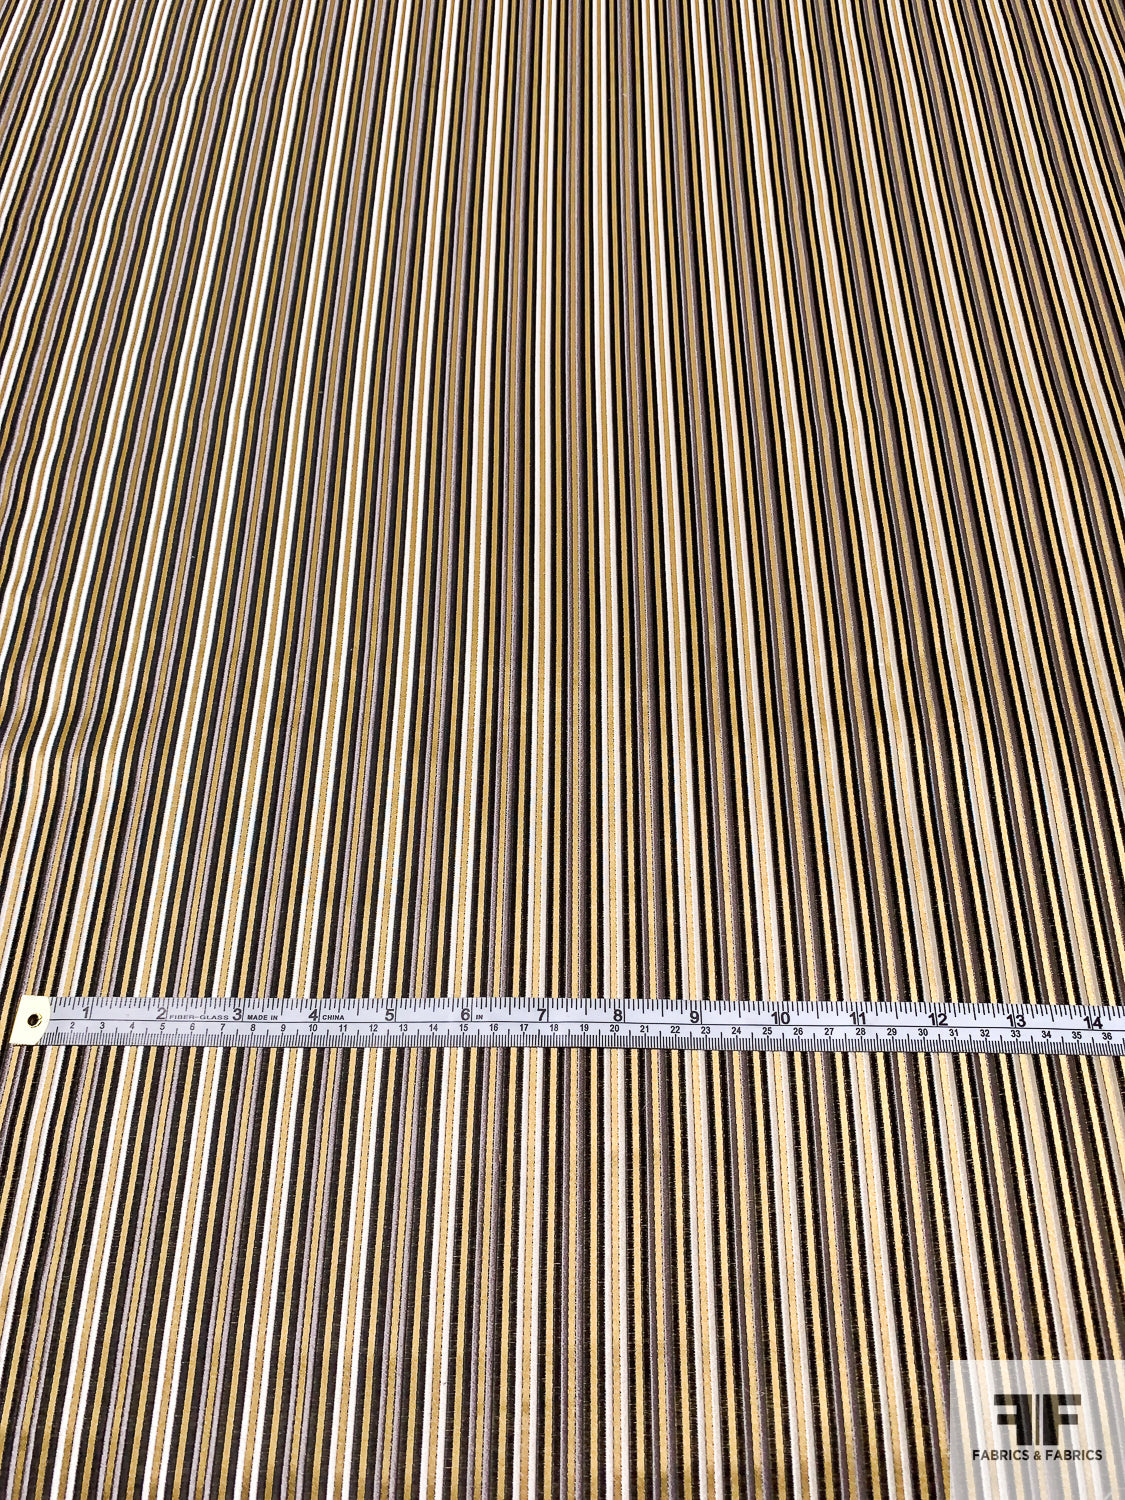 Vertical Striped Silk Necktie Jacquard Brocade - Gold / Black / Grey / White